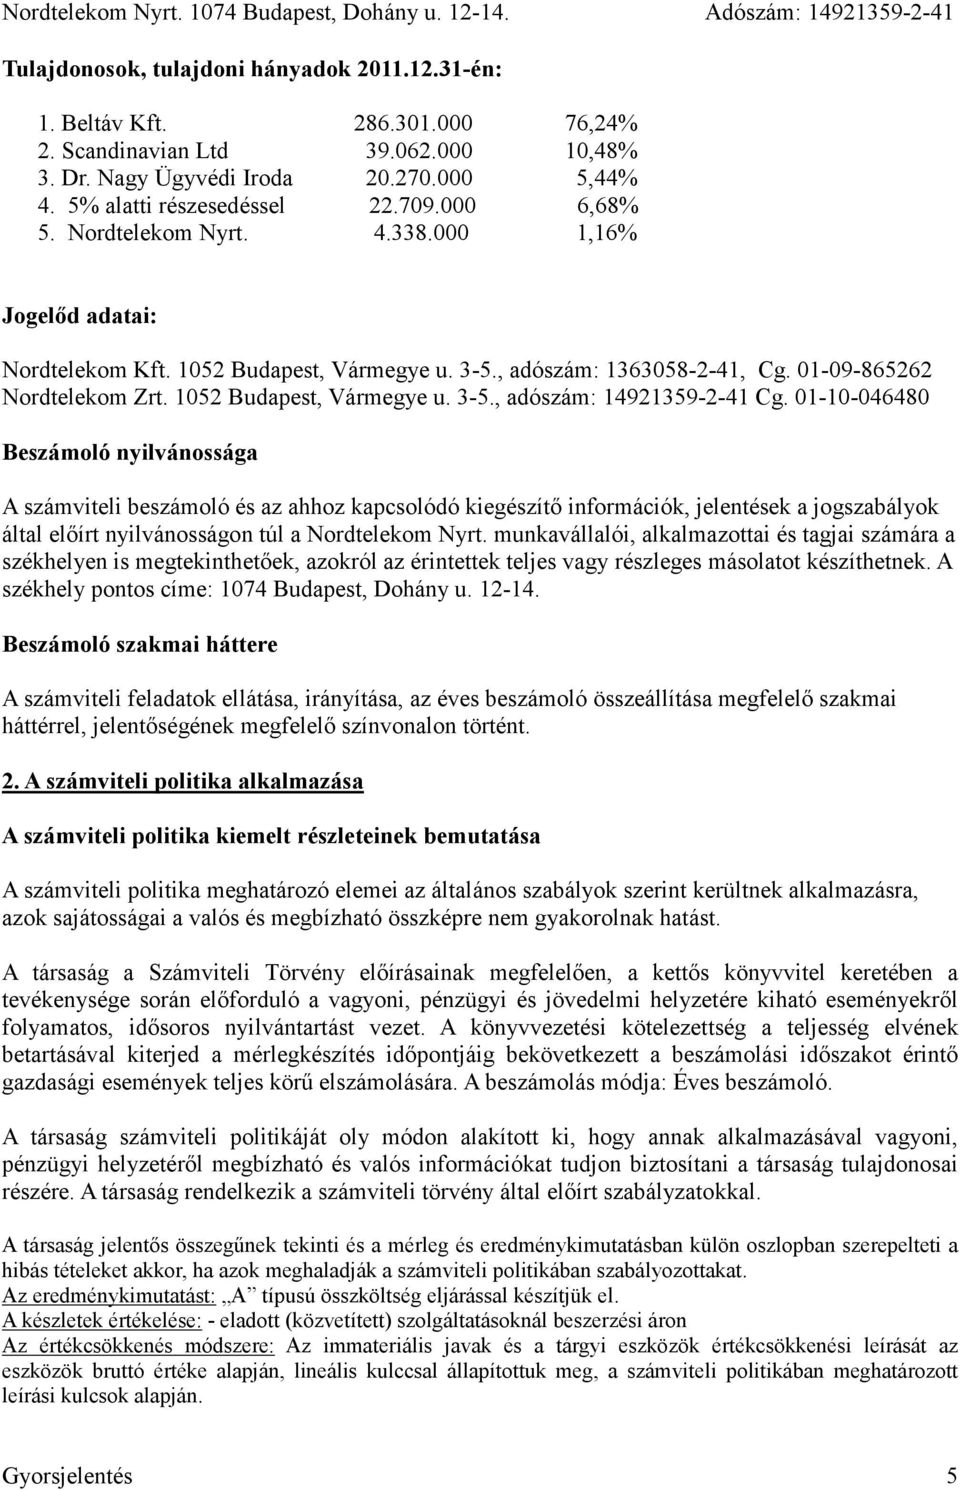 01-10-046480 Beszámoló nyilvánossága A számviteli beszámoló és az ahhoz kapcsolódó kiegészítő információk, jelentések a jogszabályok által előírt nyilvánosságon túl a Nordtelekom Nyrt.